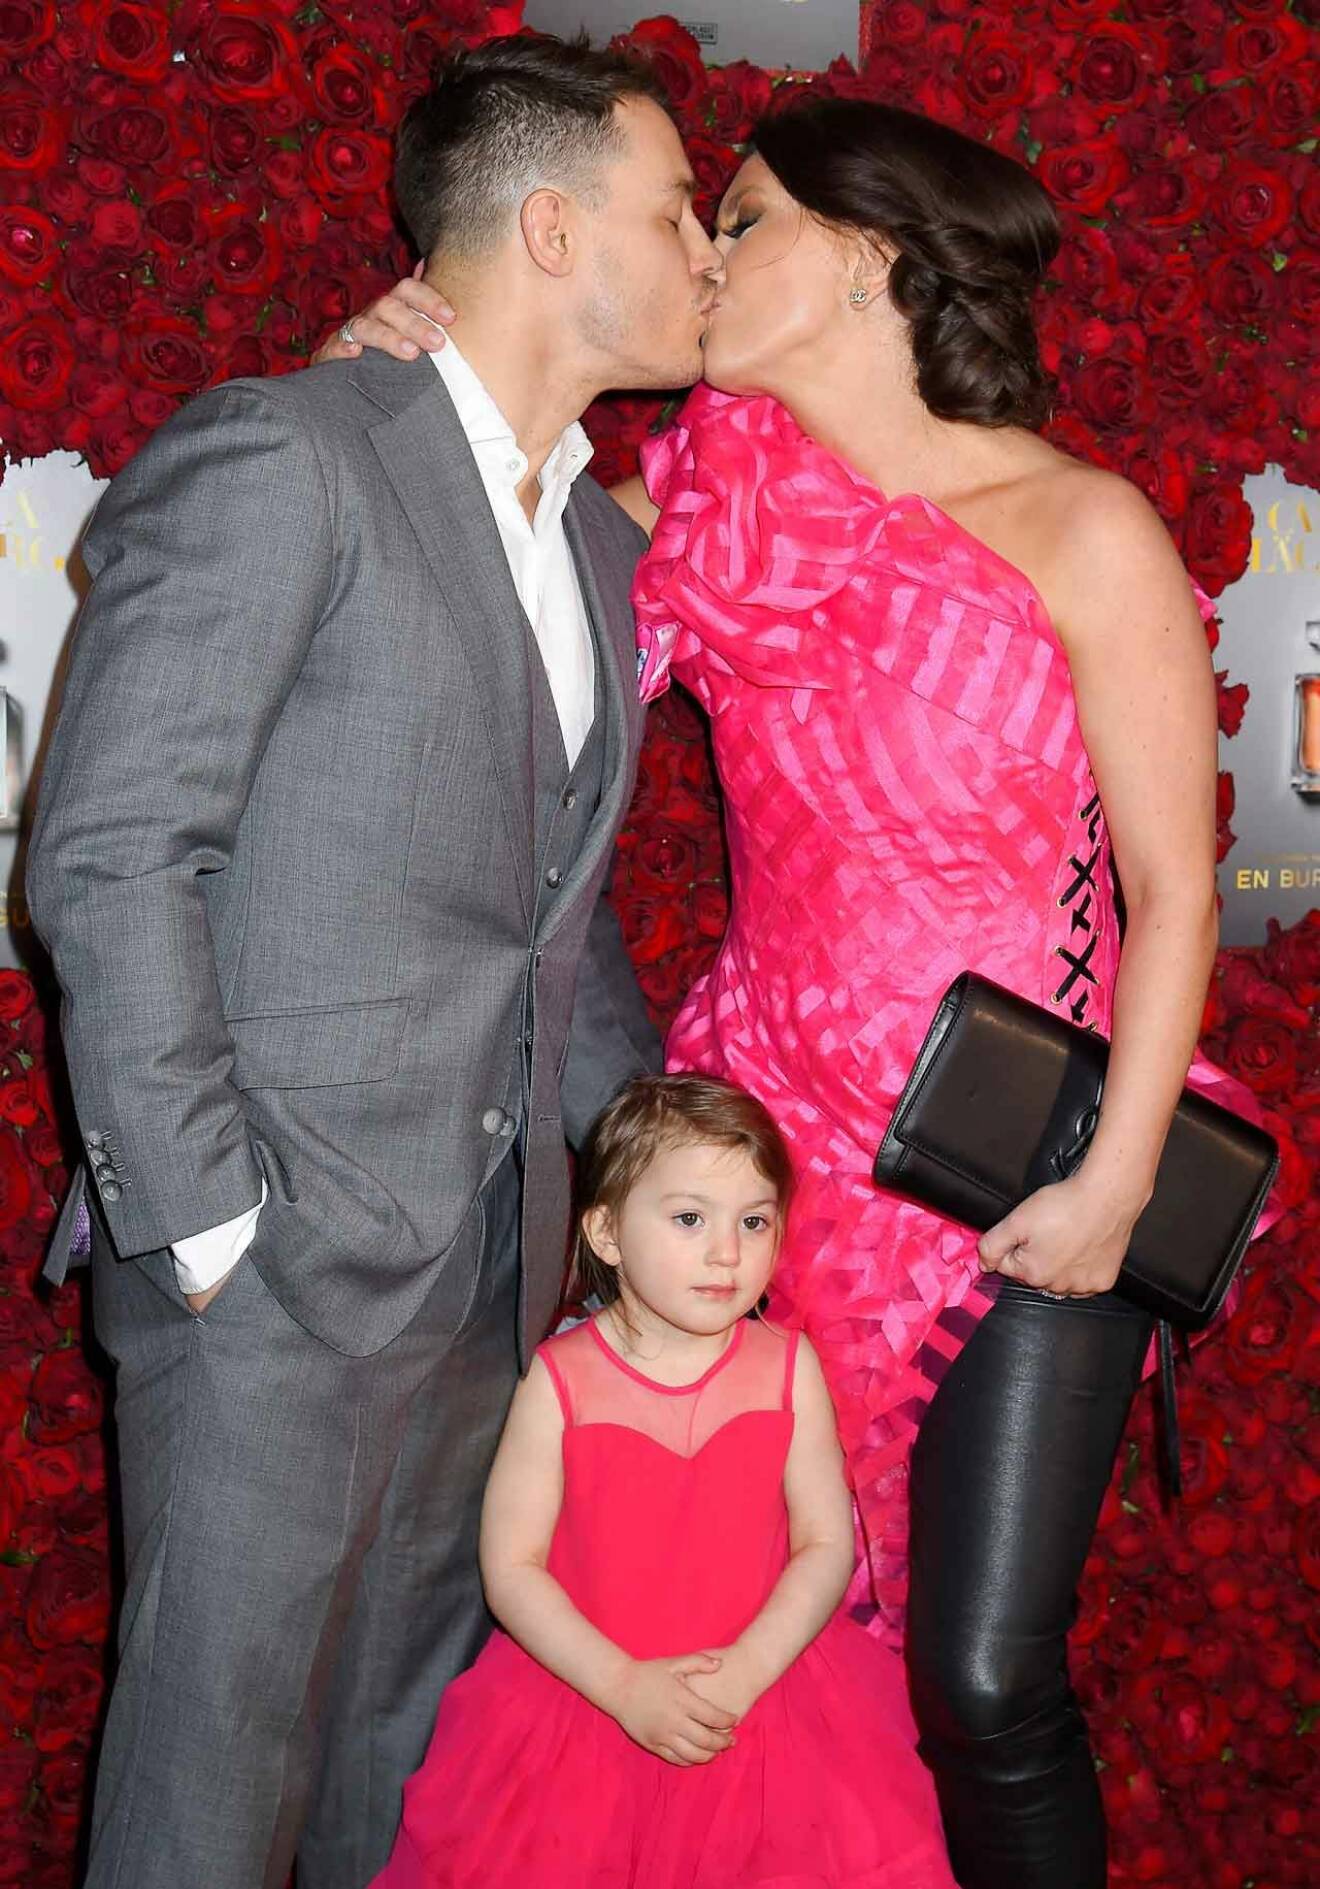 Och kysstes intensivt med maken Simon Sköld! Lilla dottern Penny i rosa klänning, precis som mamma.